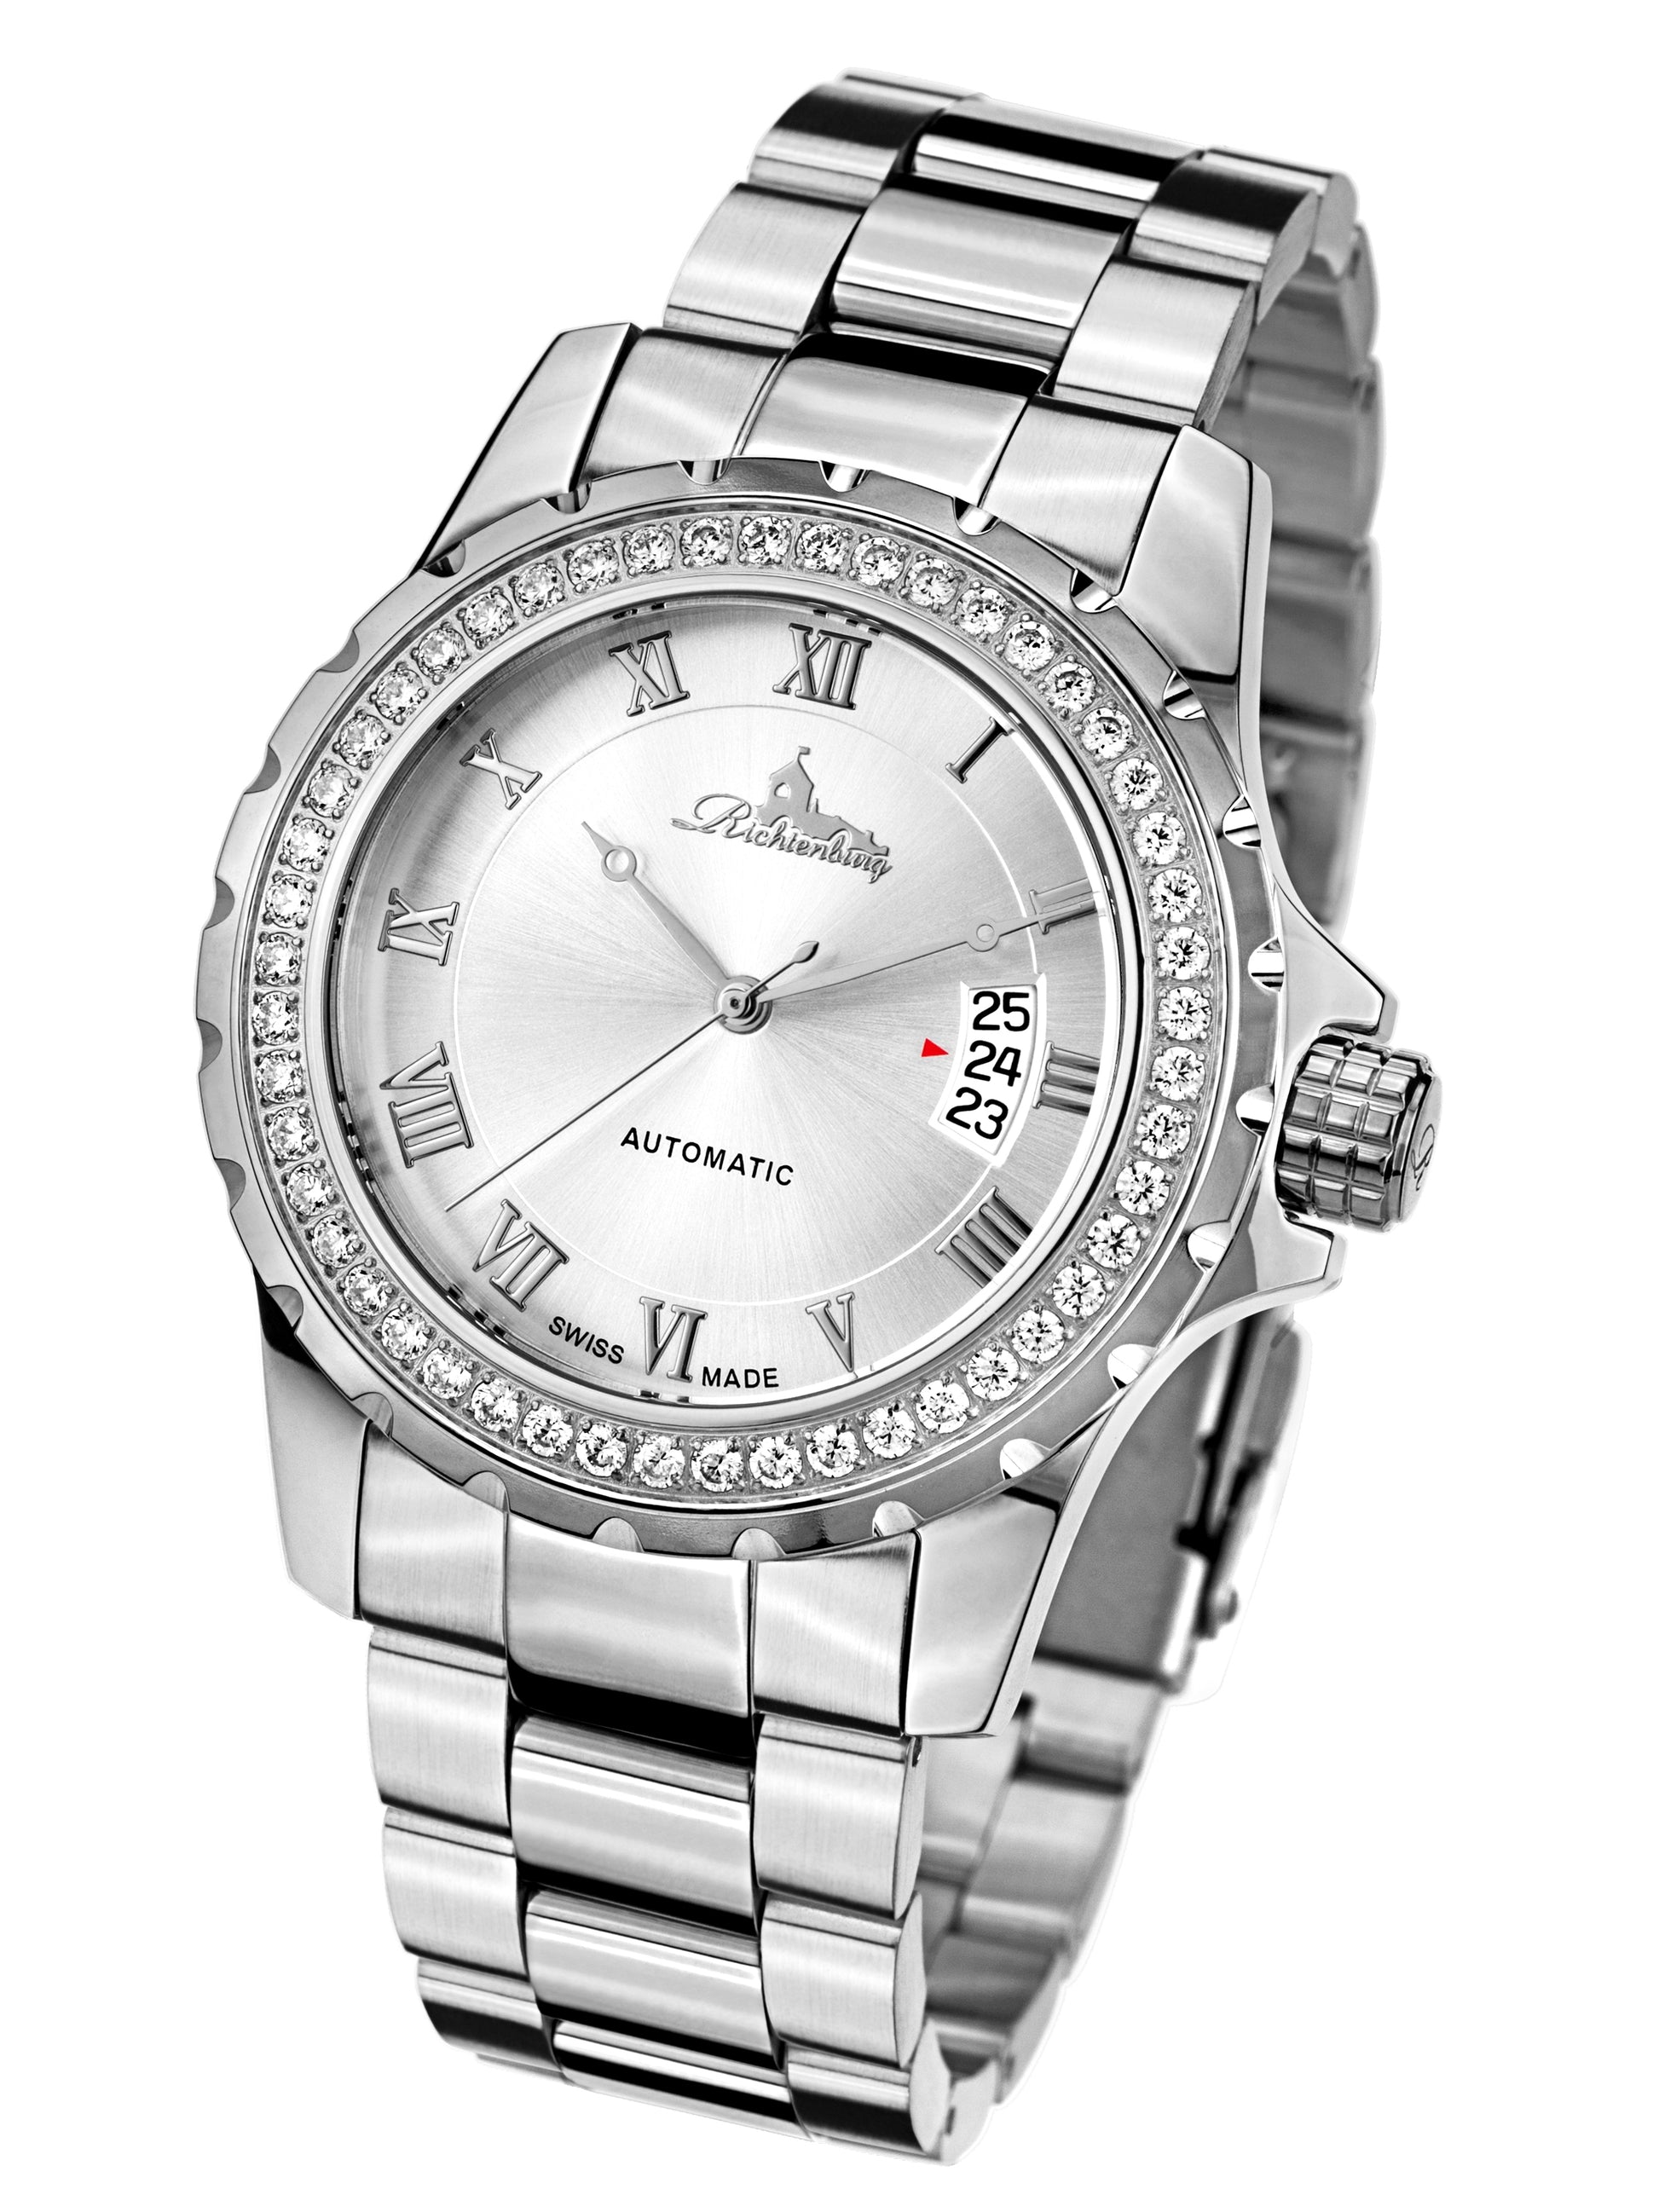 Automatic watches — Clasica — Richtenburg — steel silver